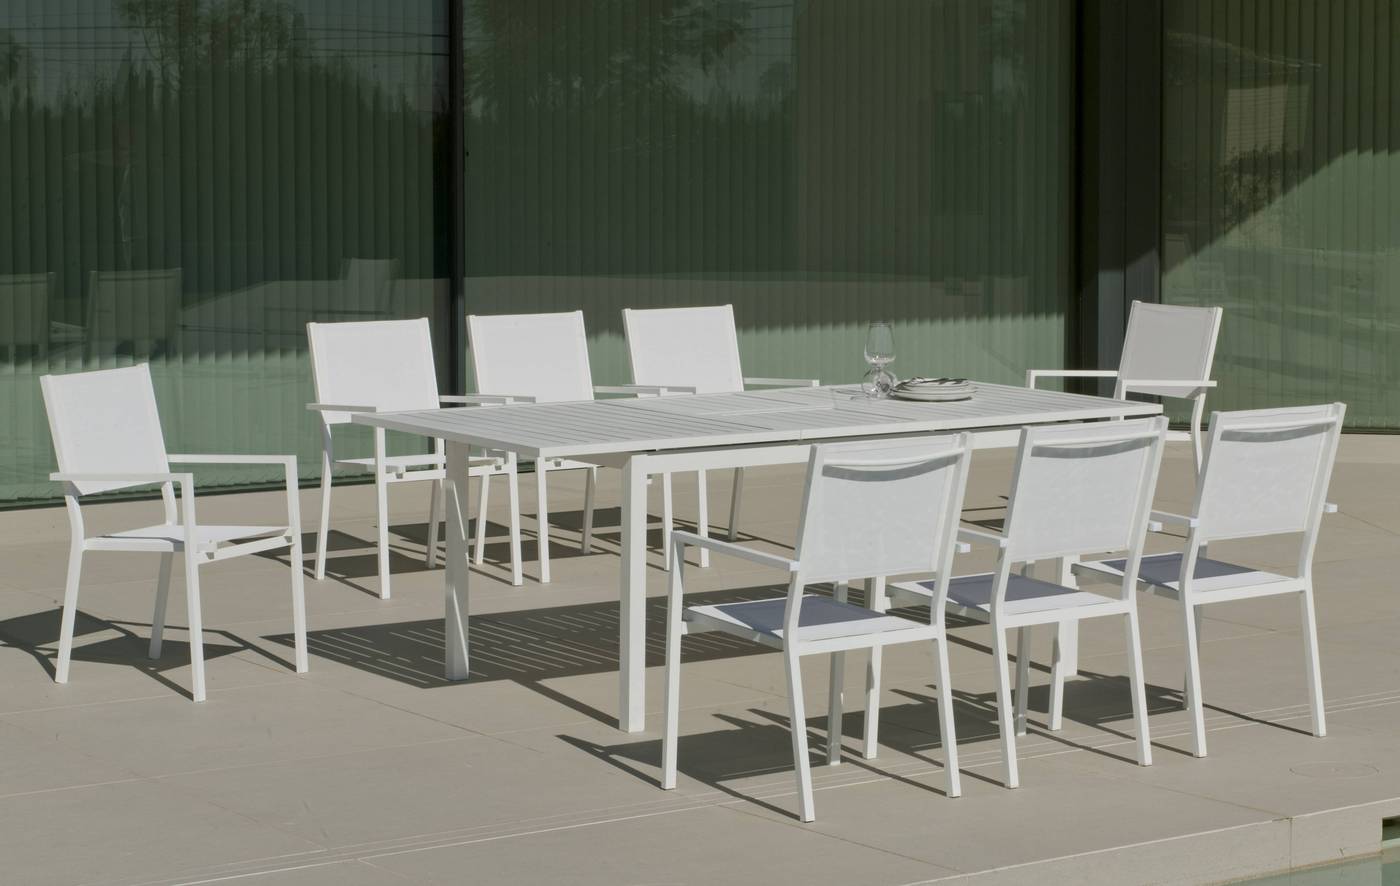 Set Aluminio PalmaExt-Córcega 220-8 - Conjunto de aluminio luxe: mesa extensible 170-220 cm. + 8 sillones de textilen. Disponible en color blanco, antracita, champagne, plata o marrón.